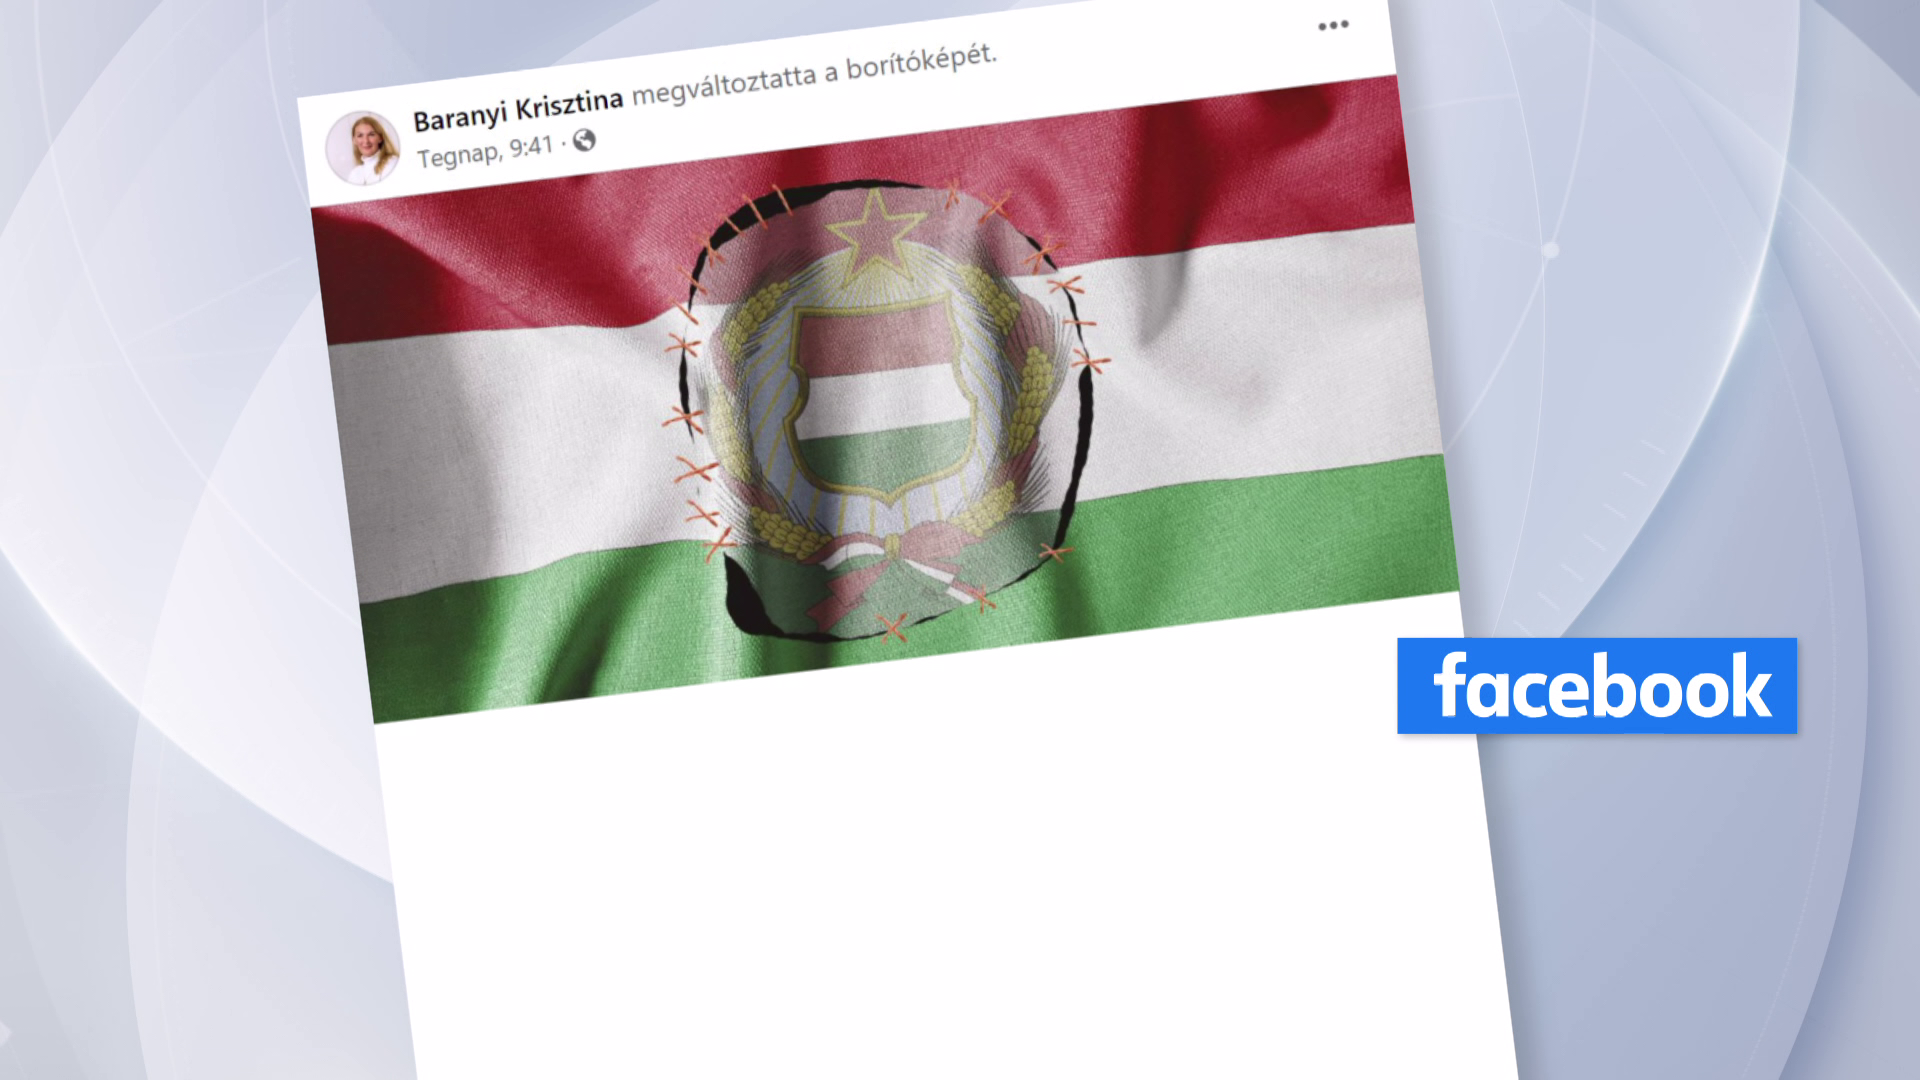 Önkényuralmi jelképet csempészett a magyar zászlóba Ferencváros polgármestere